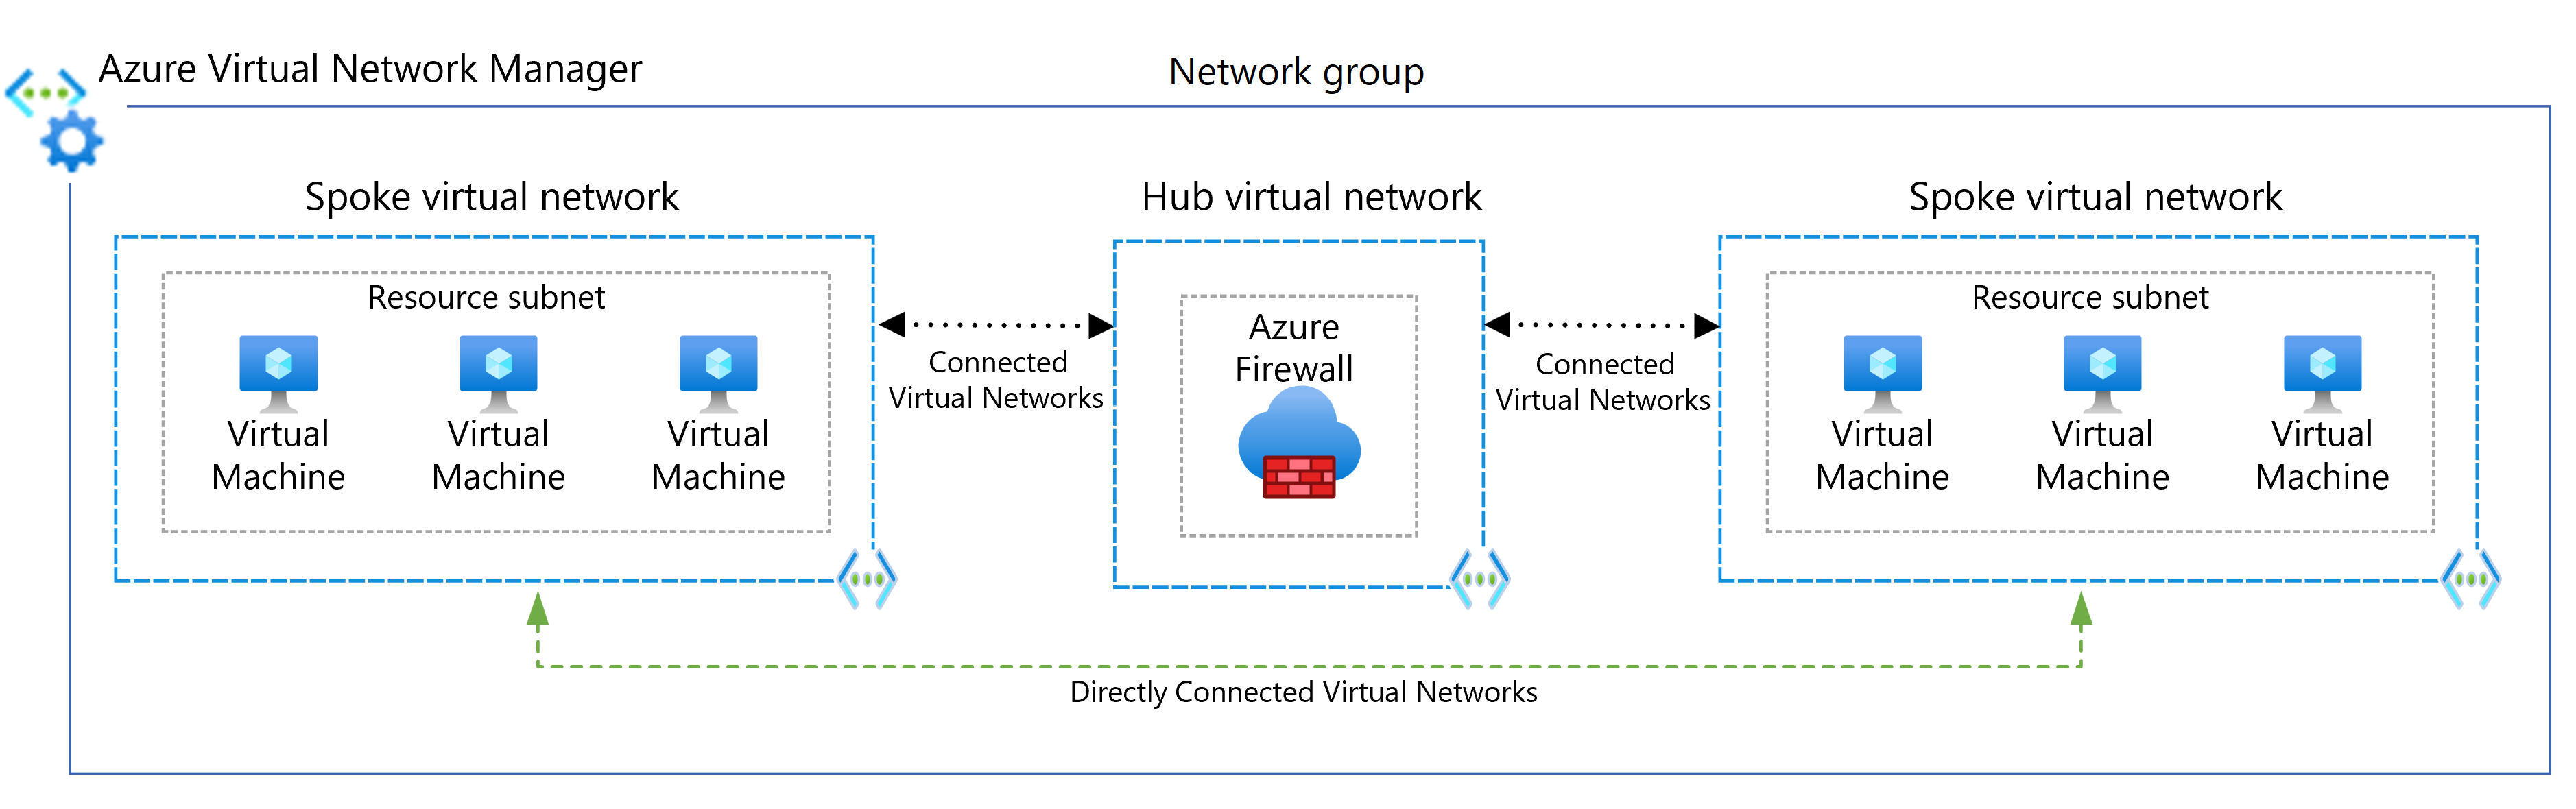 رسم تخطيطي يوضح استخدام Virtual Network Manager للاتصال المباشر بين المحاور.